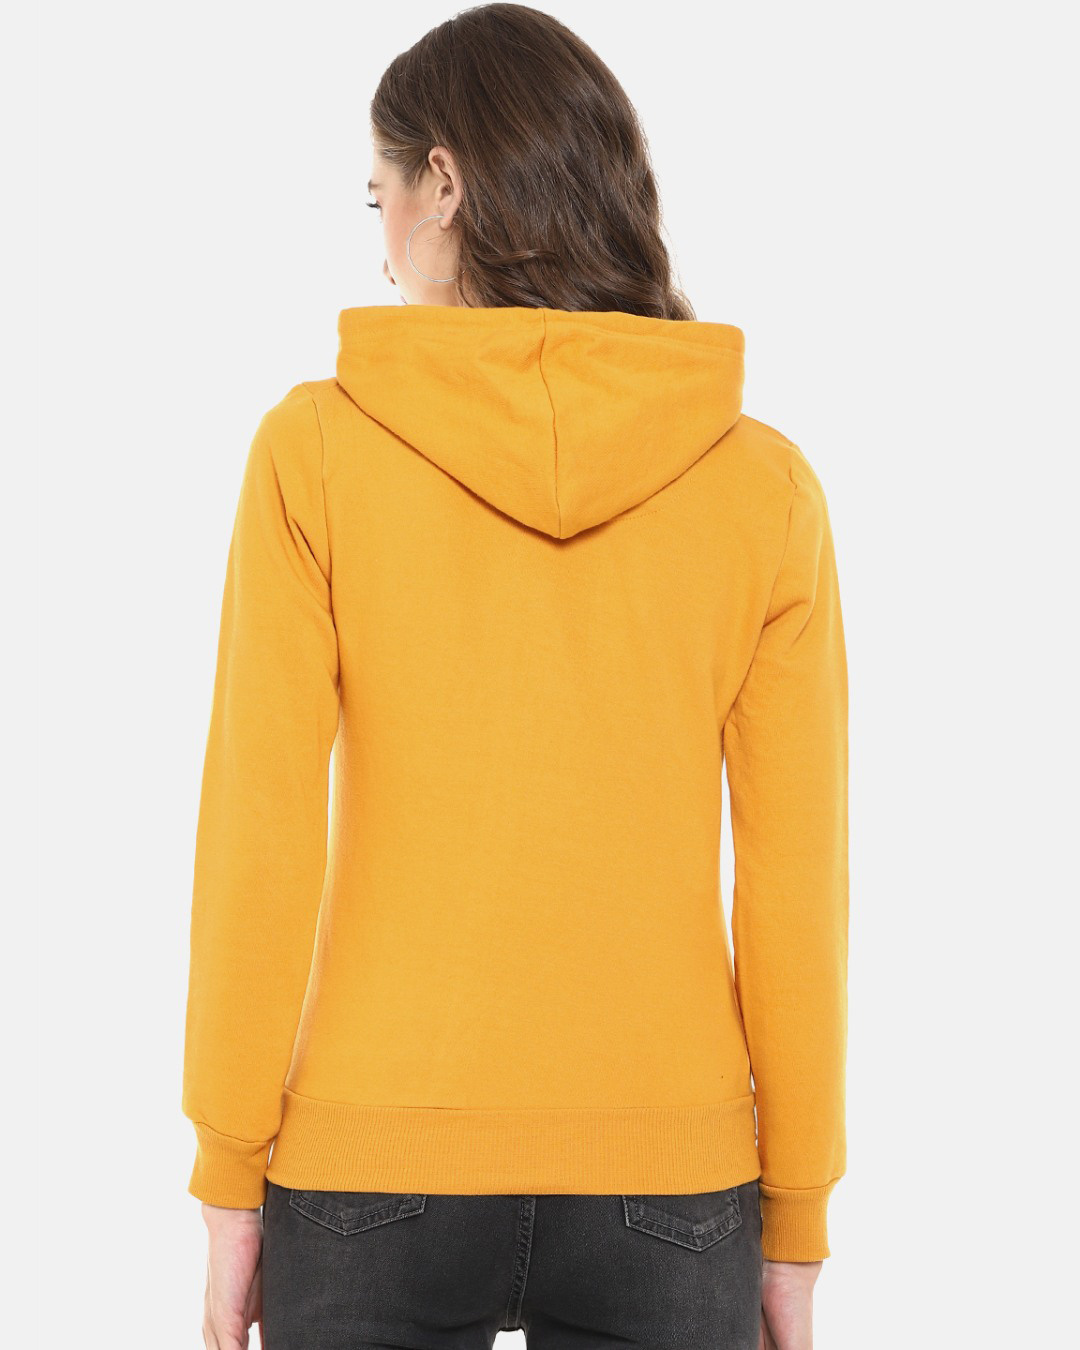 Shop Women's Yellow Typhography Stylish Casual Hooded Sweatshirt-Back